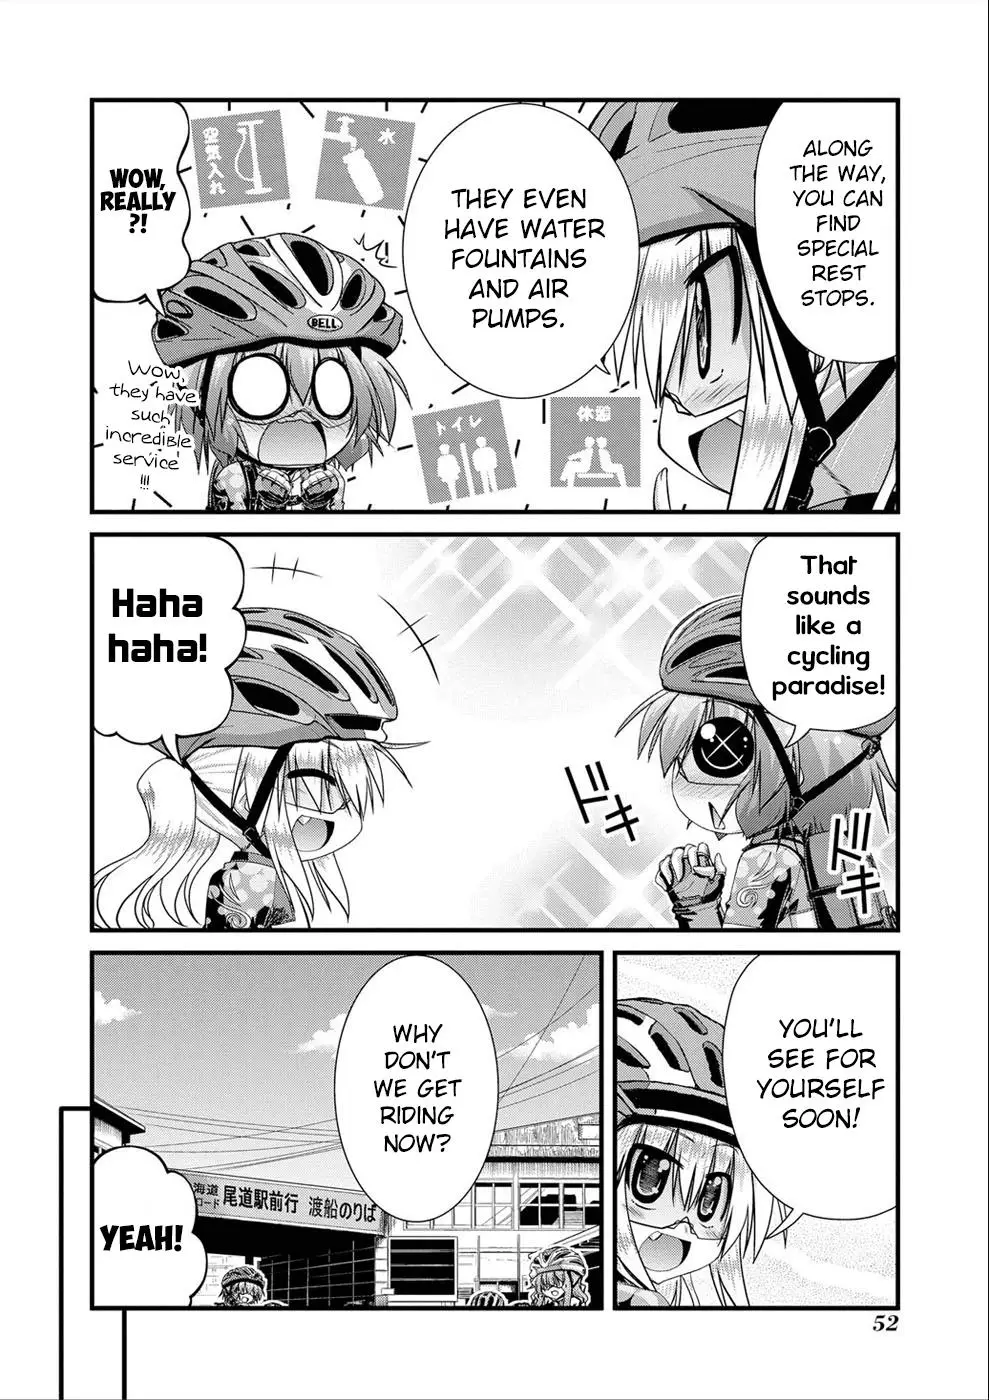 Long Riders! - 19 page 8-1399a9e4